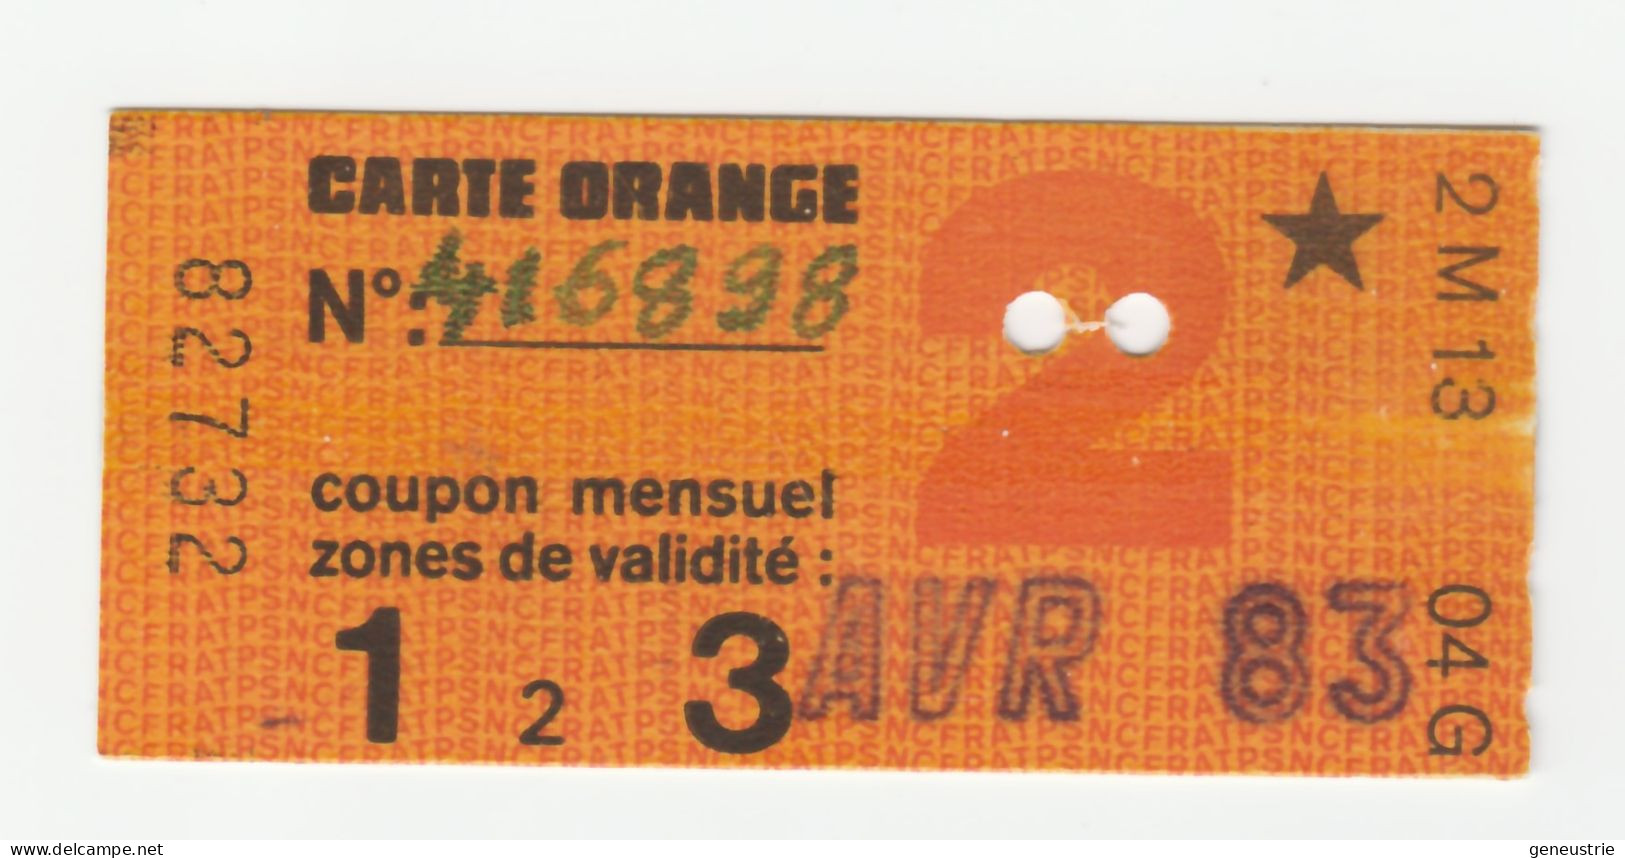 Ticket De Carte Orange Paris "Type Etoile" Avril 1983 - 2e Classe - Zones 1 à 3 - SNCF / RATP - Métro Parisien - Europe